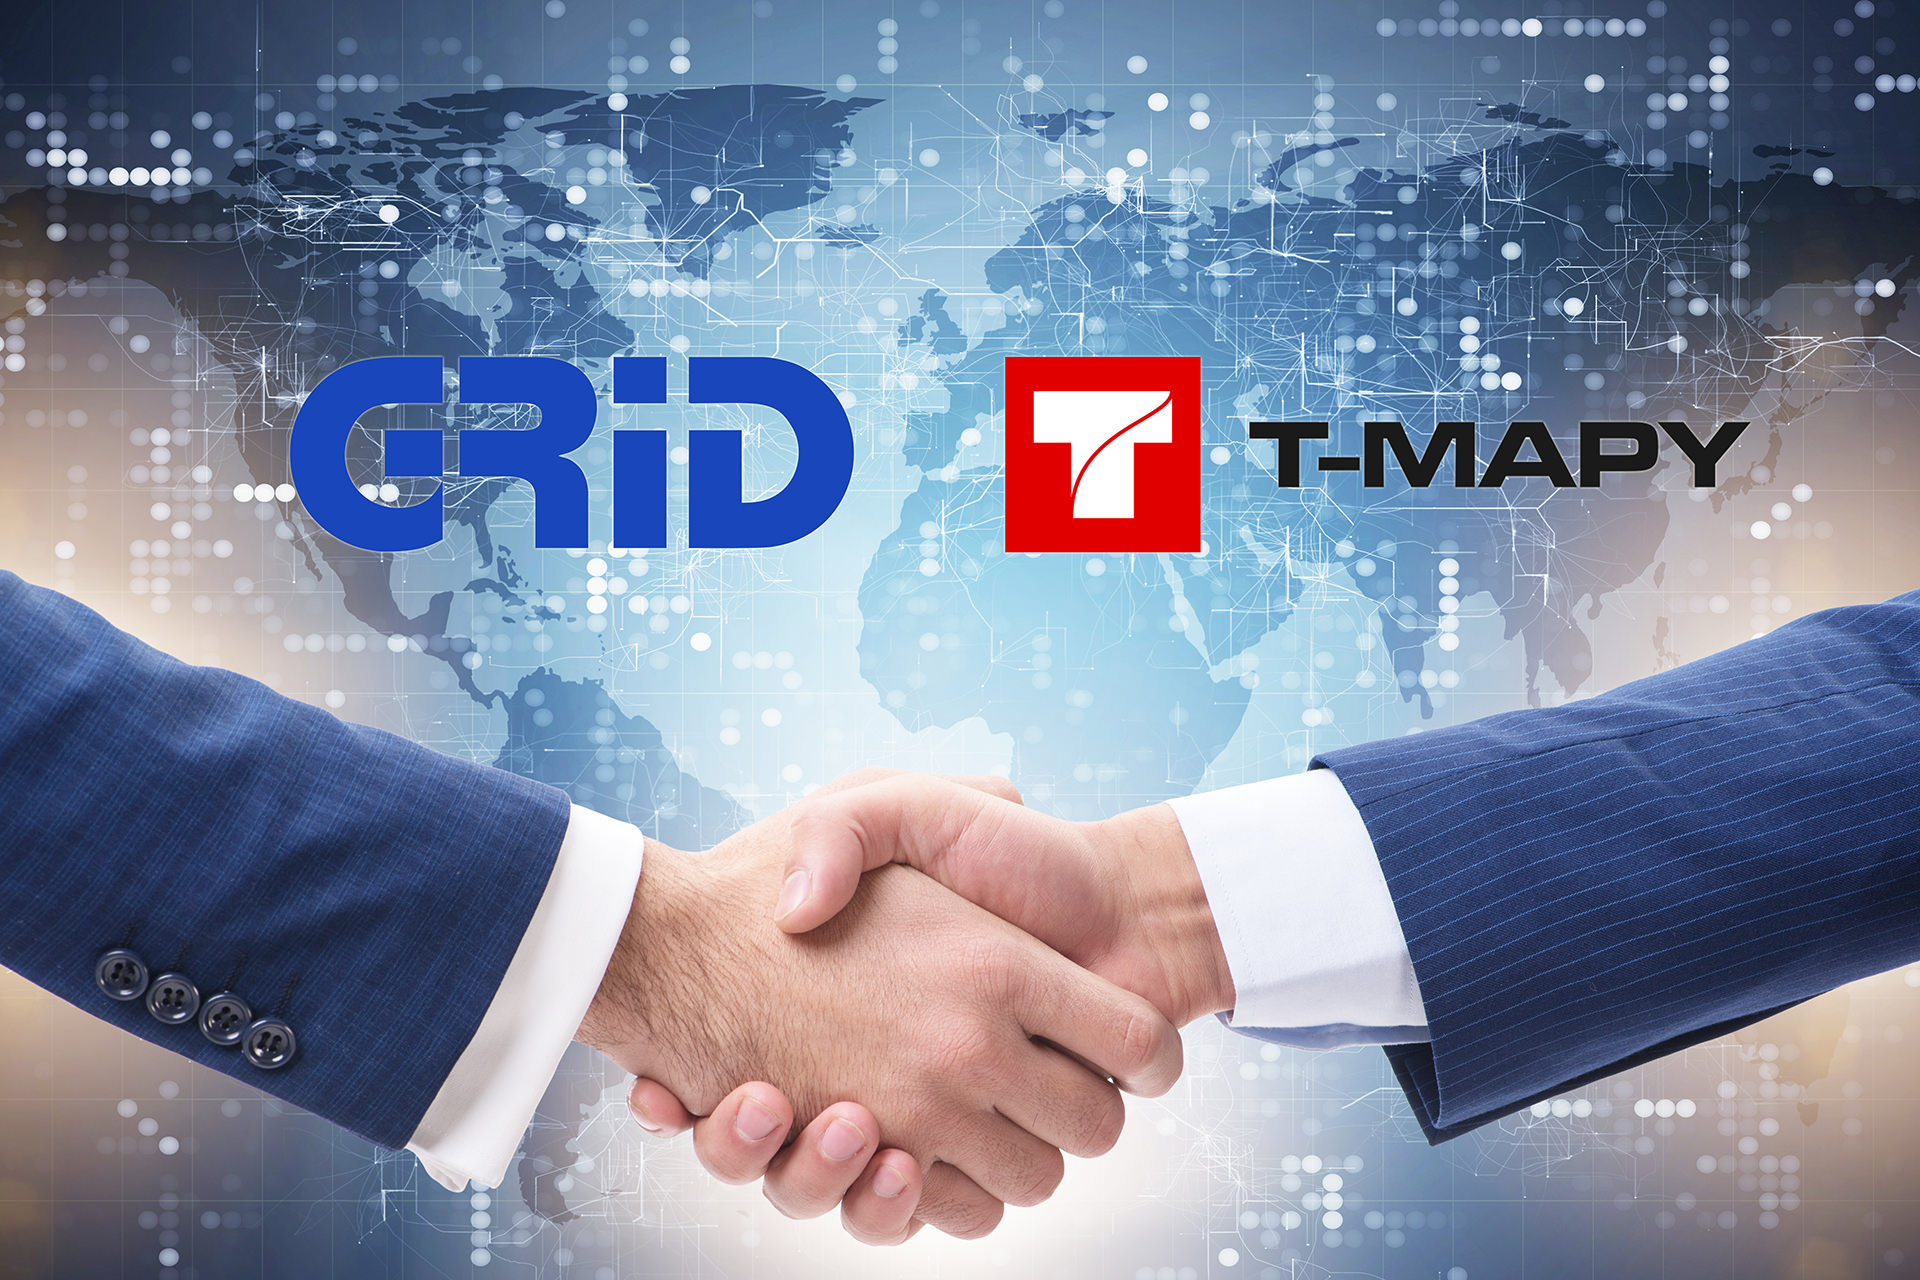 GRID oznamuje majetkové propojení se společností T-MAPY